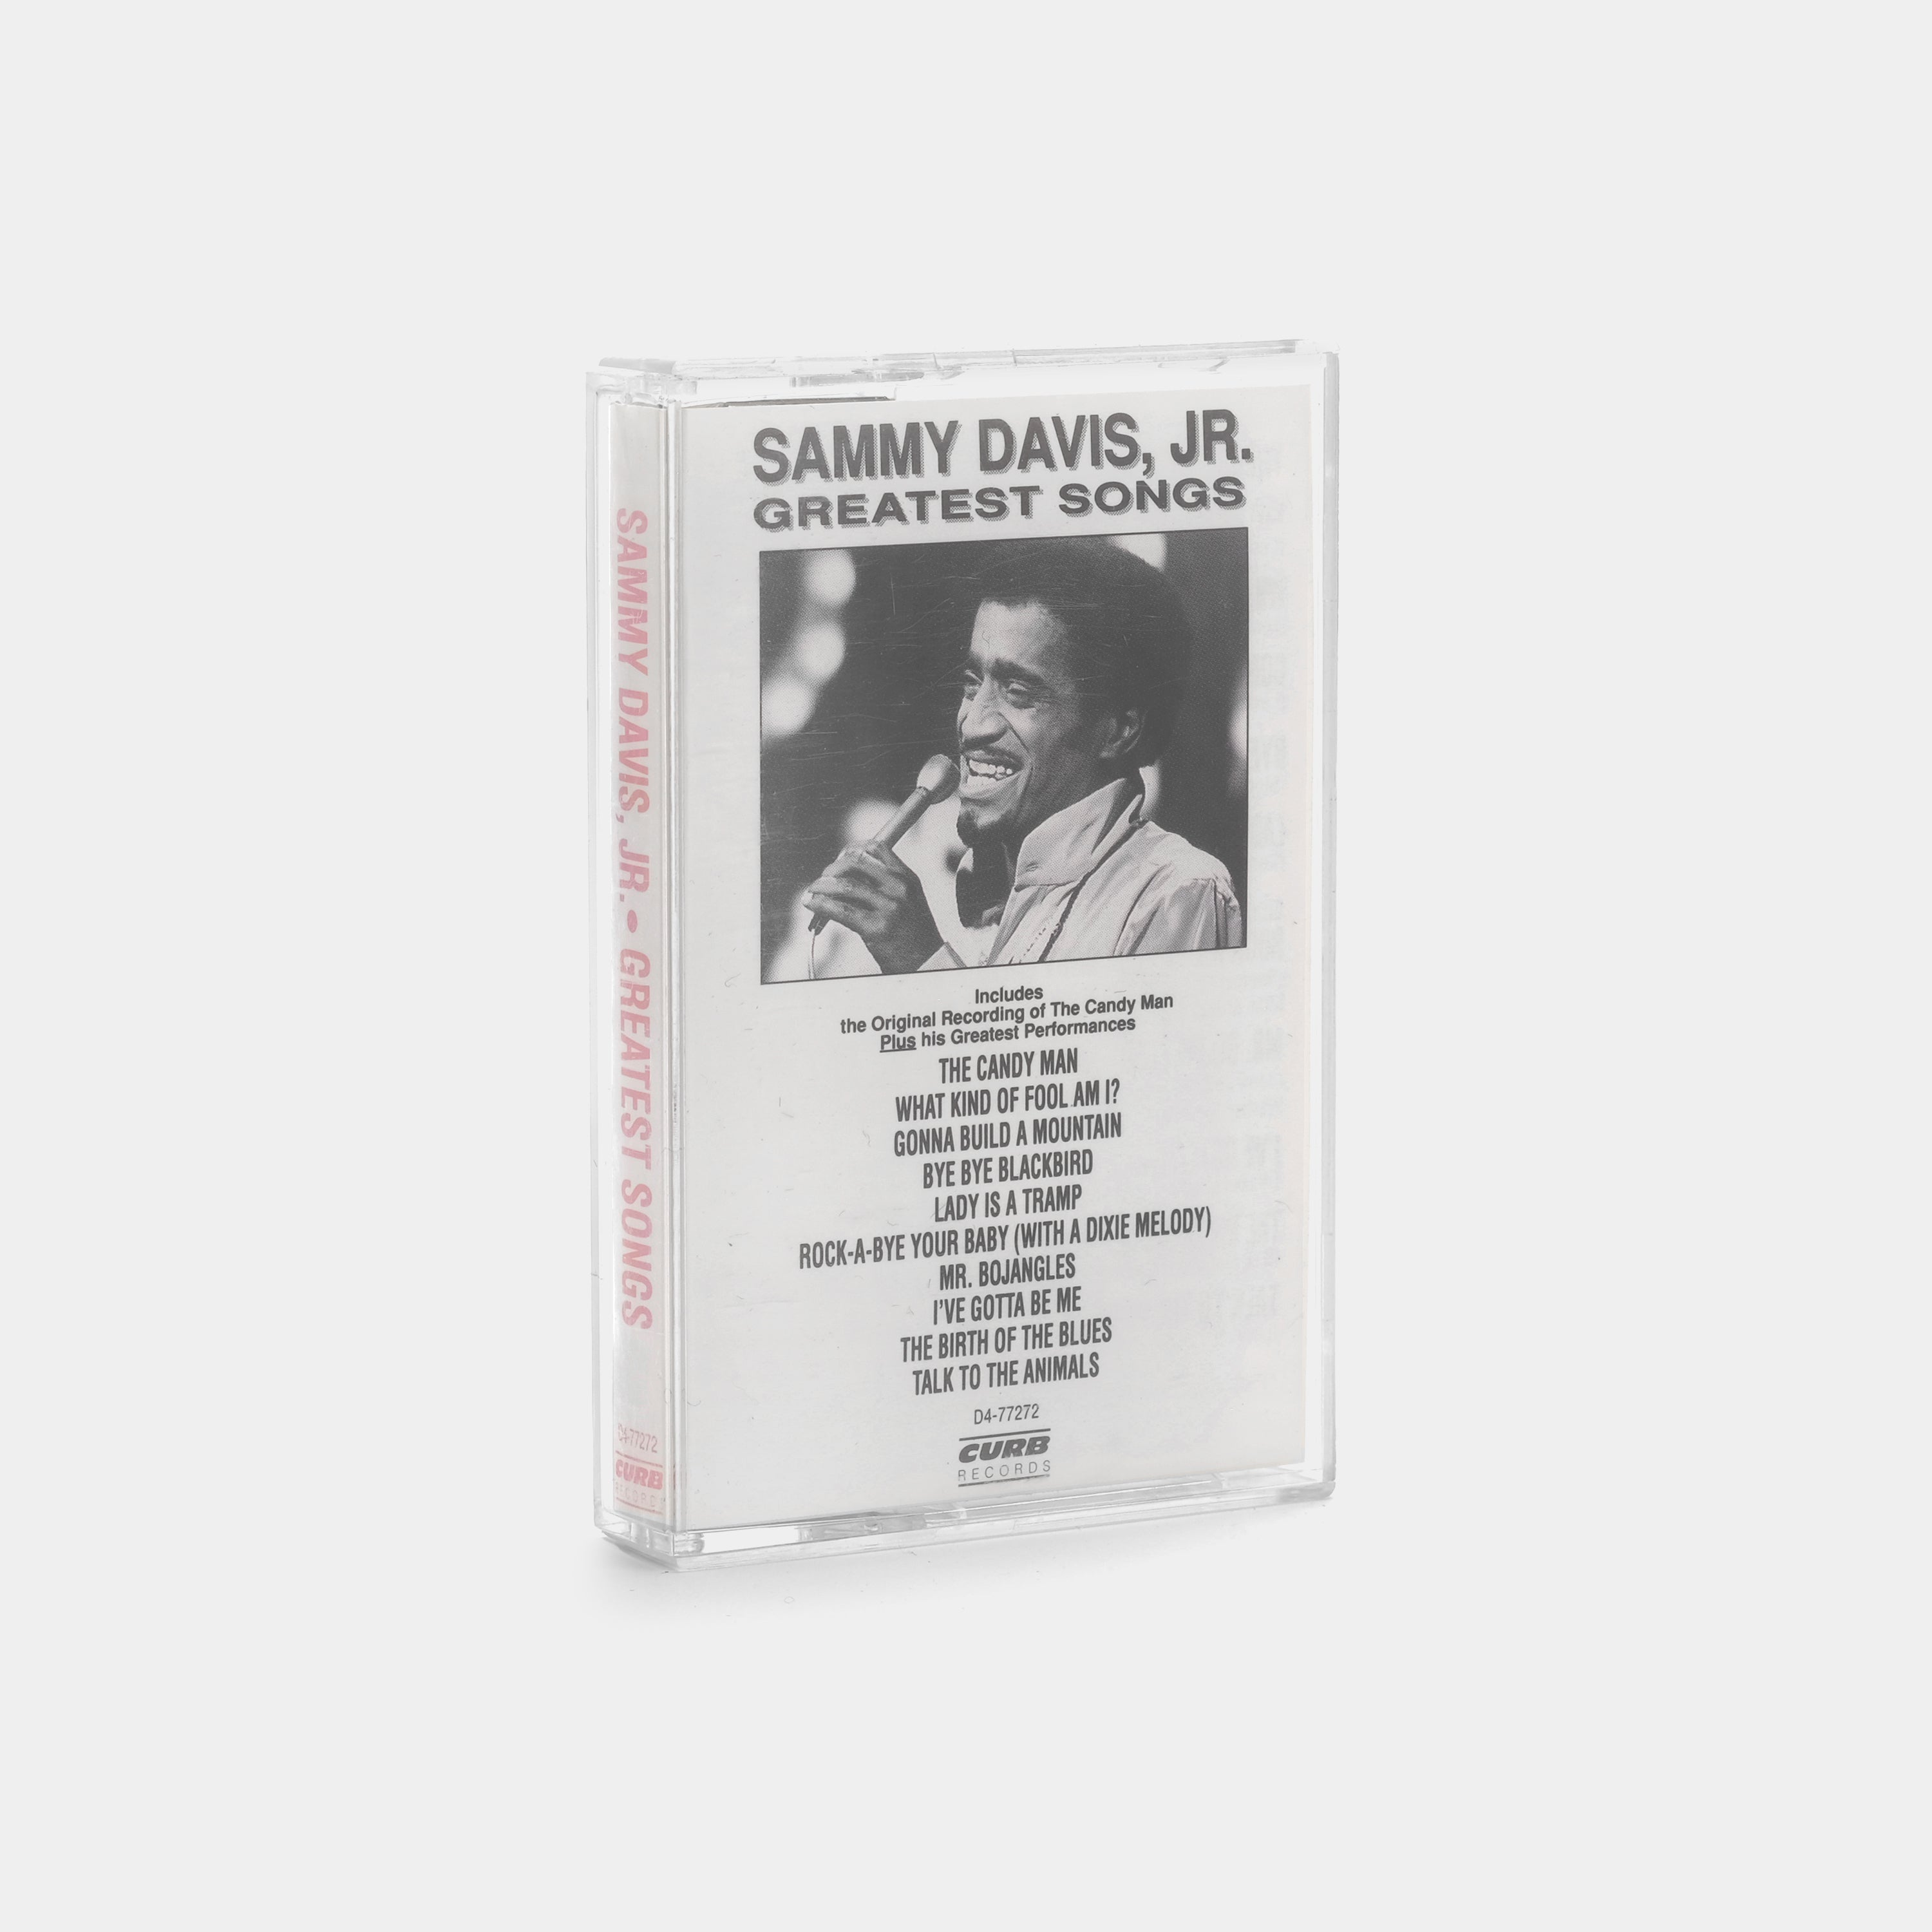 Sammy Davis Jr. - Greatest Songs Cassette Tape